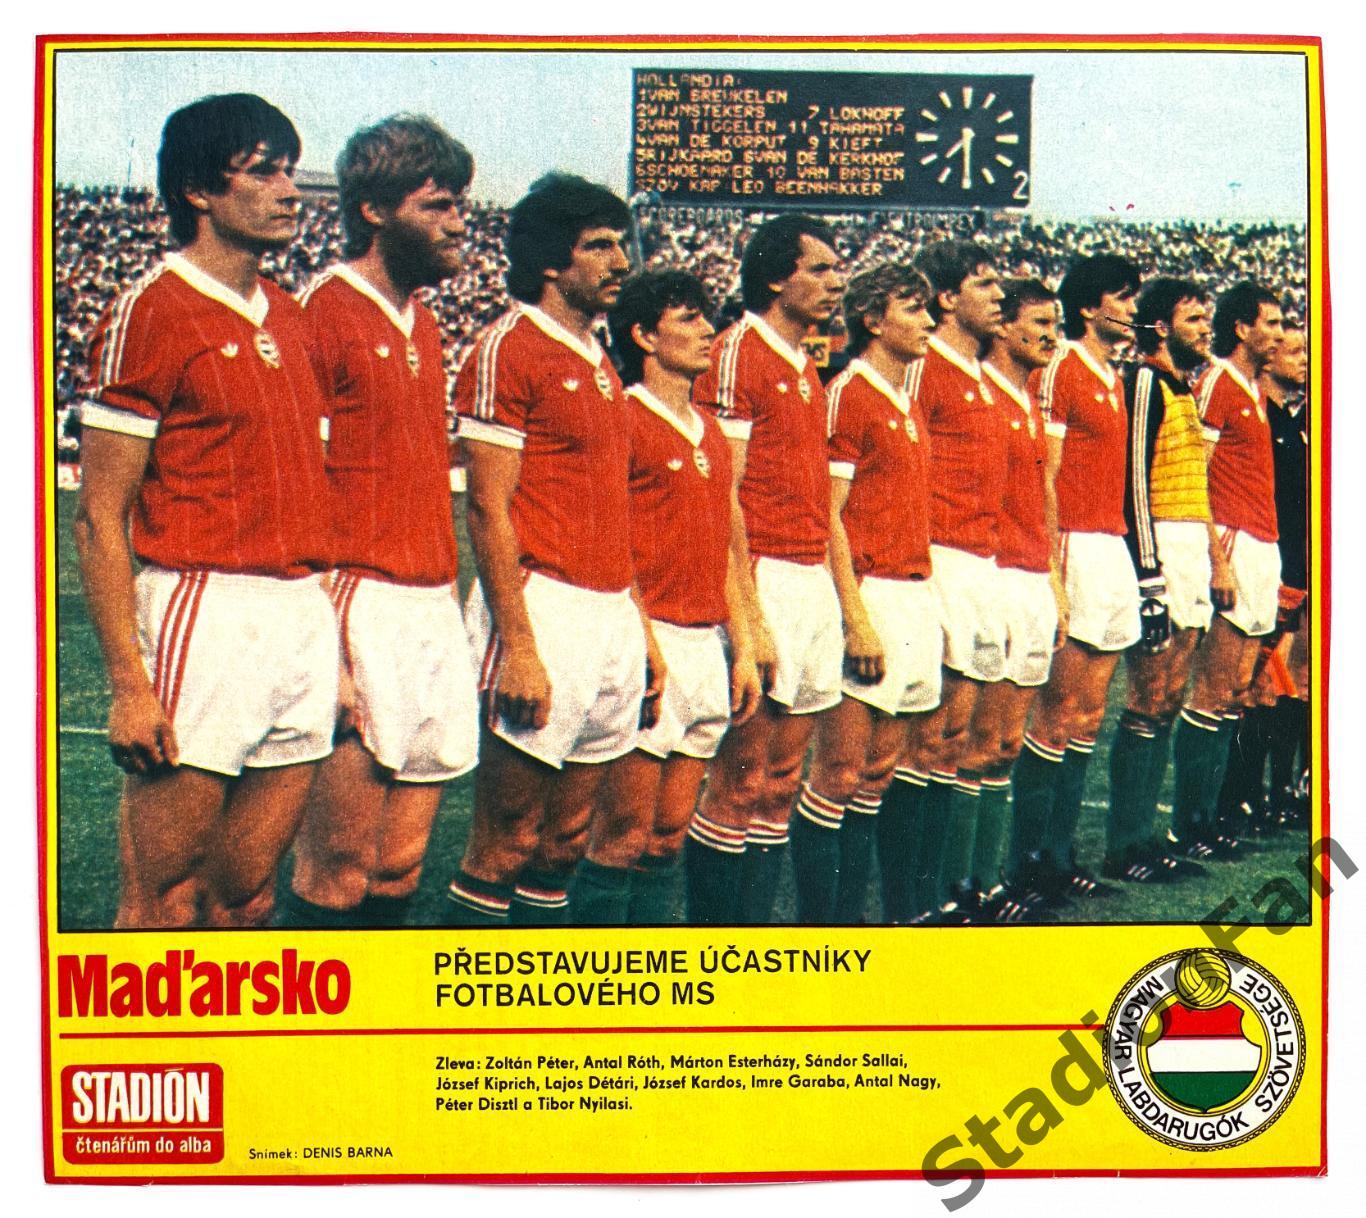 Постер из журнала Стадион (Stadion) - Madarsko, 1986